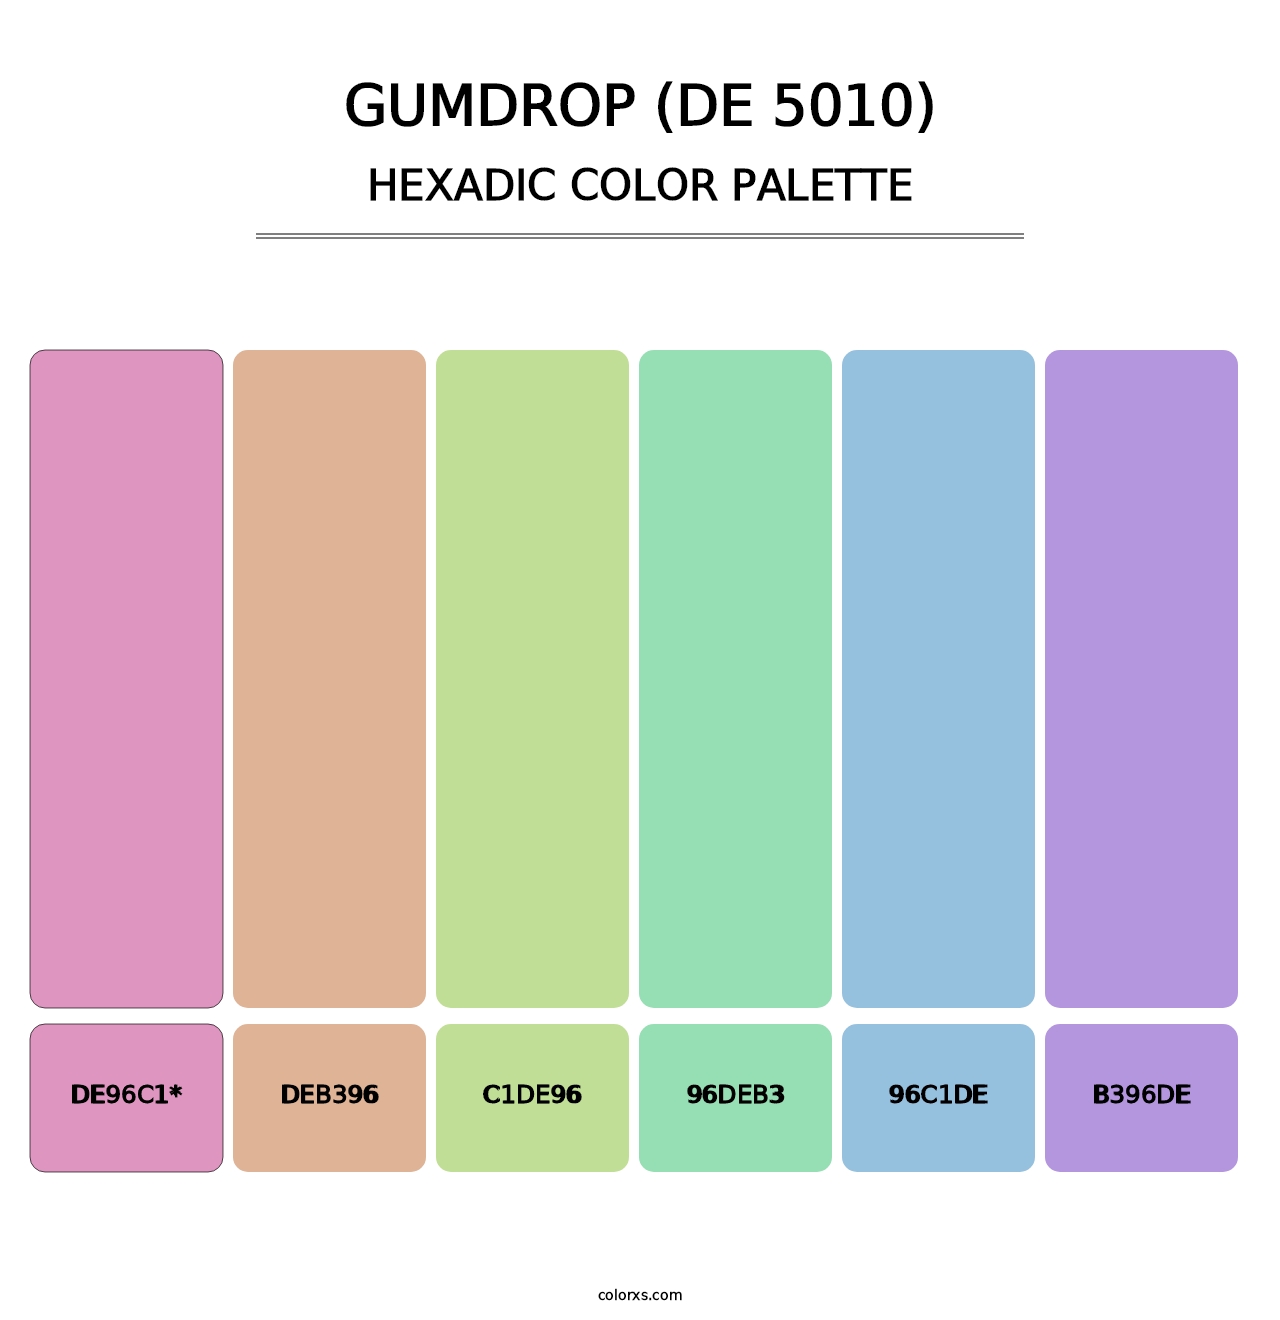 Gumdrop (DE 5010) - Hexadic Color Palette